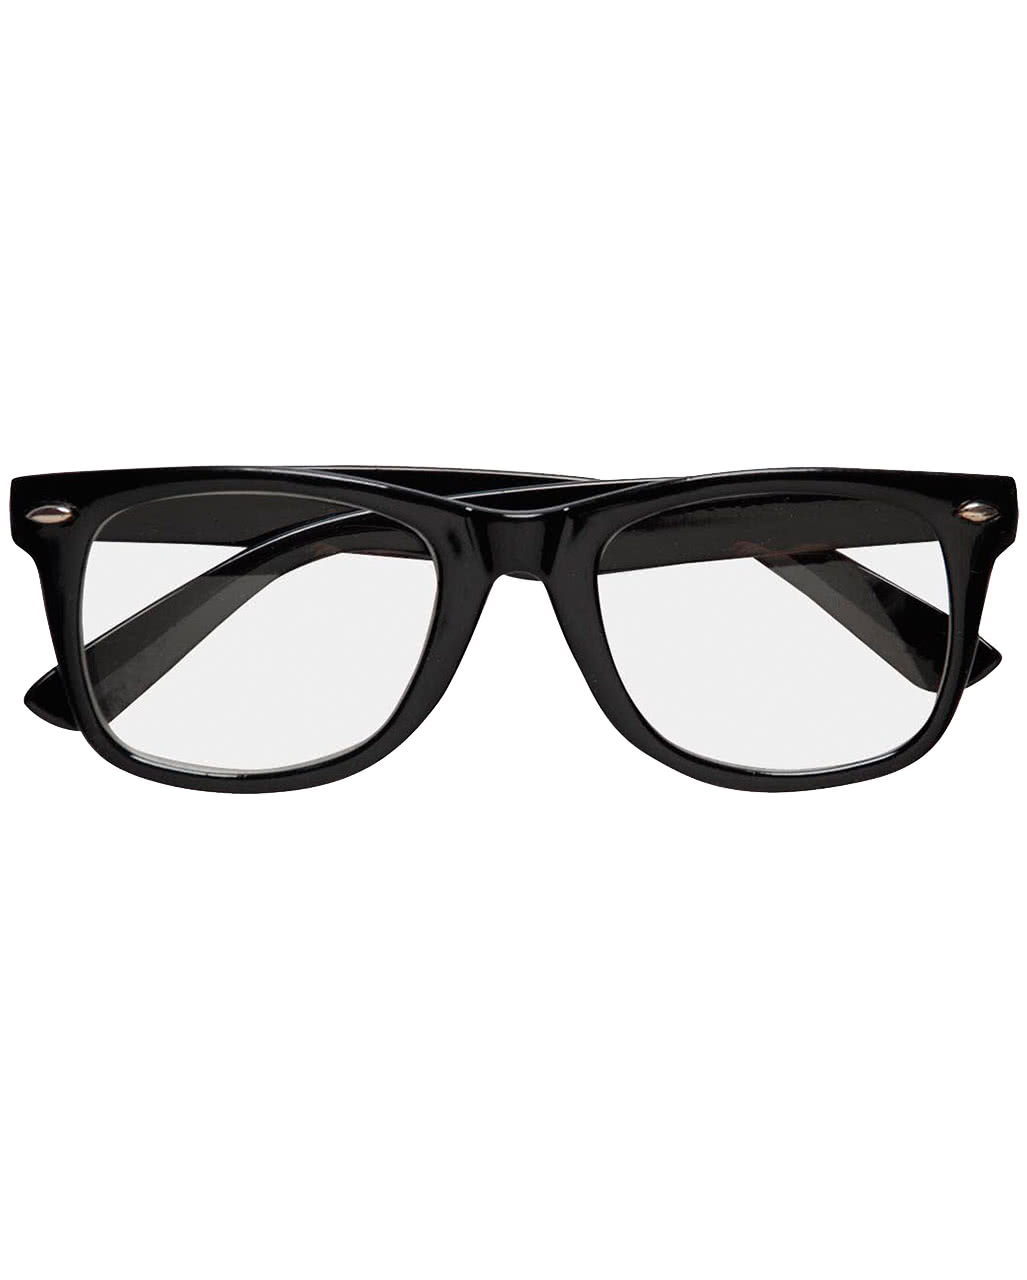 schwarze nerd brille mit glaesern streberbrille faschingsbrille karnevalsbrille 17338